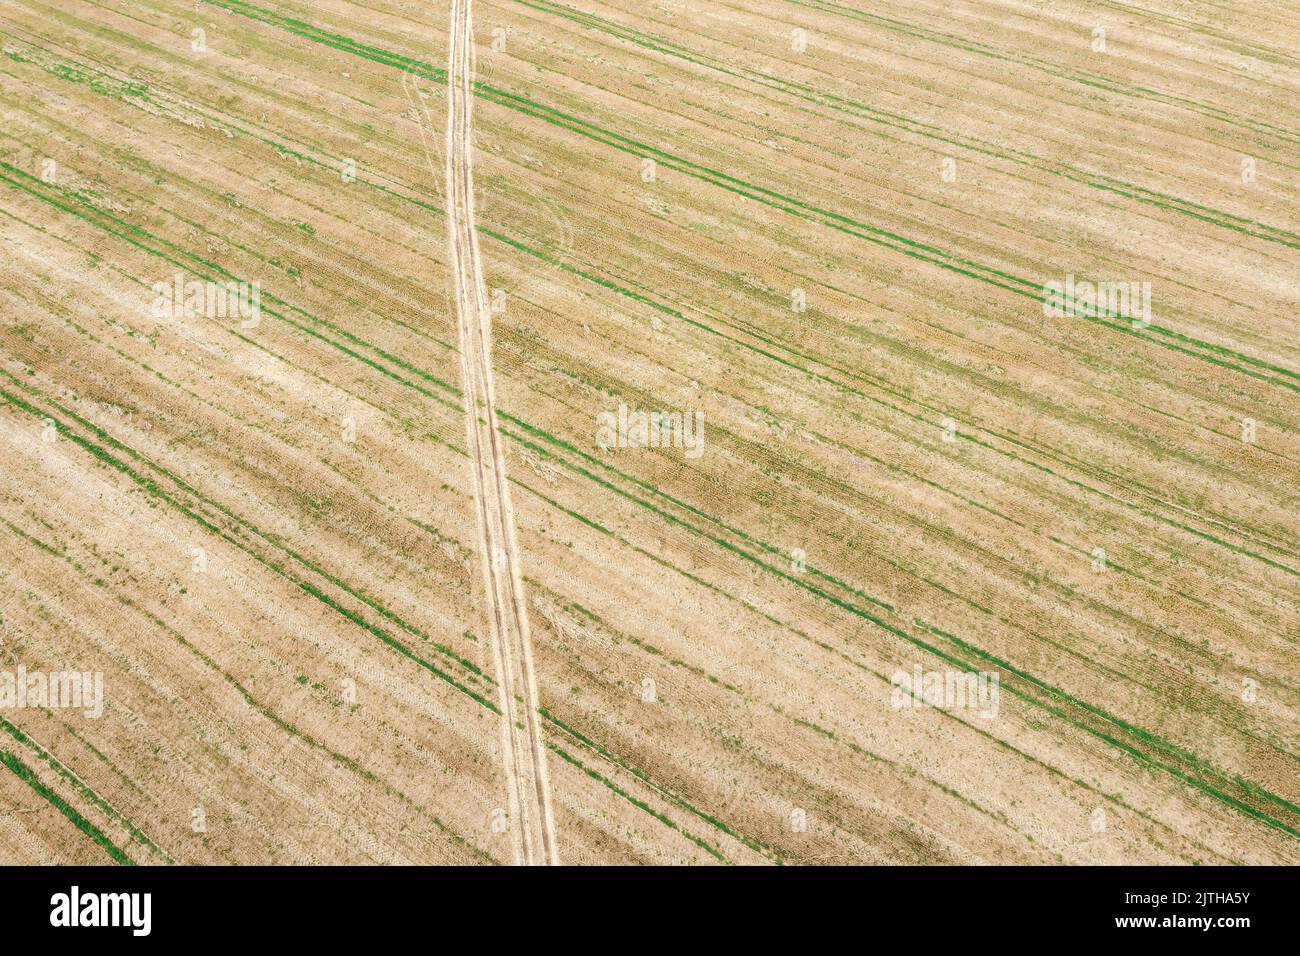 carretera rural a través de campos de trigo en el campo. vista aérea desde aviones teledirigidos. Foto de stock